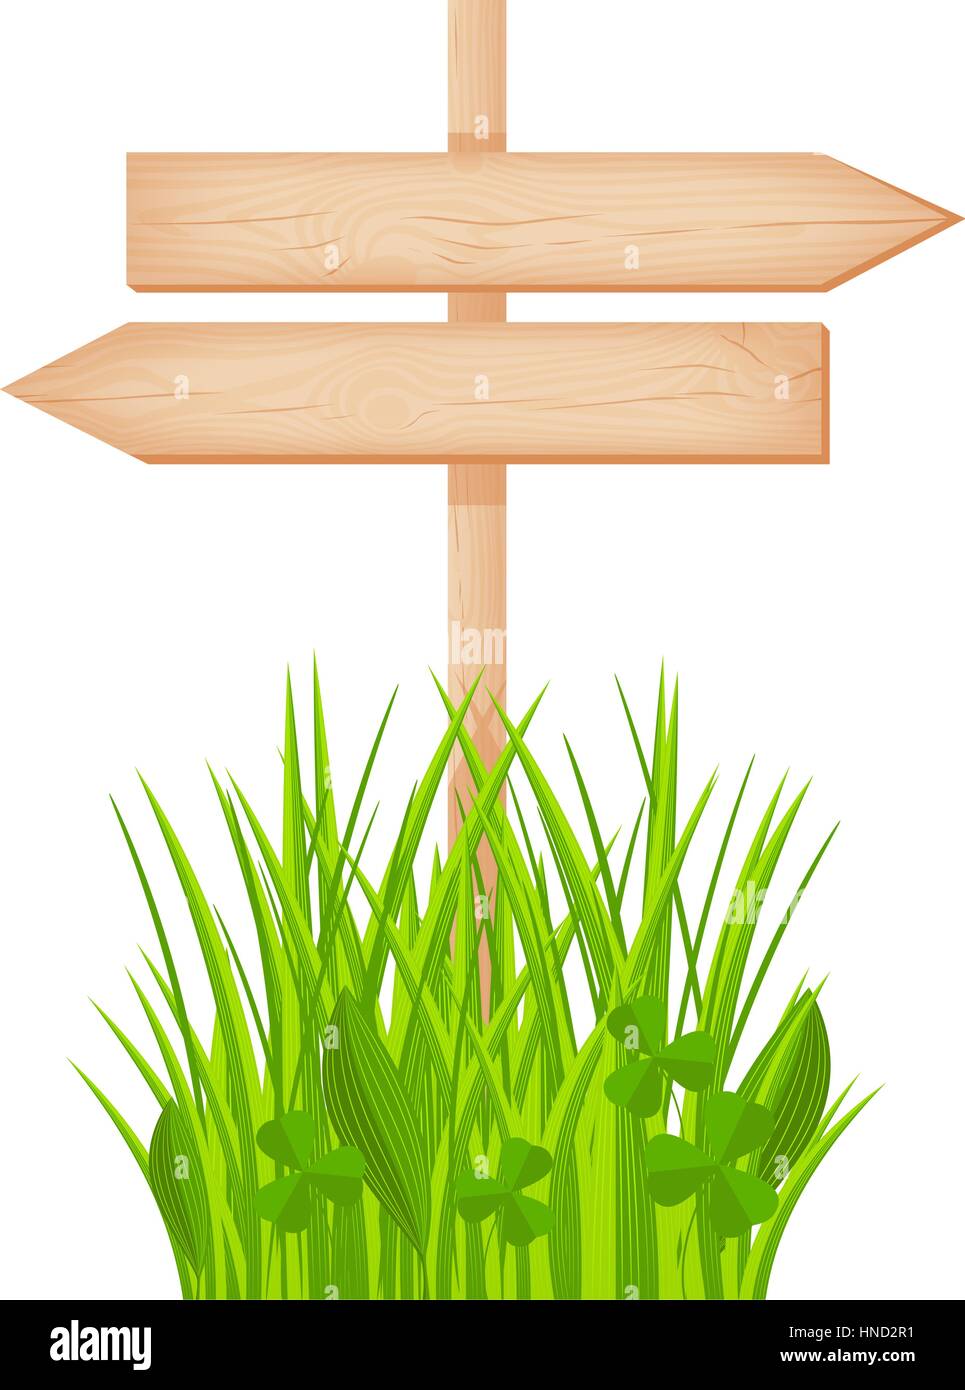 Aus Holz zwei gegenüber Pfeile Schild mit Ästen und Rissen an einem Mast am Rasen Vektor-illustration Stock Vektor